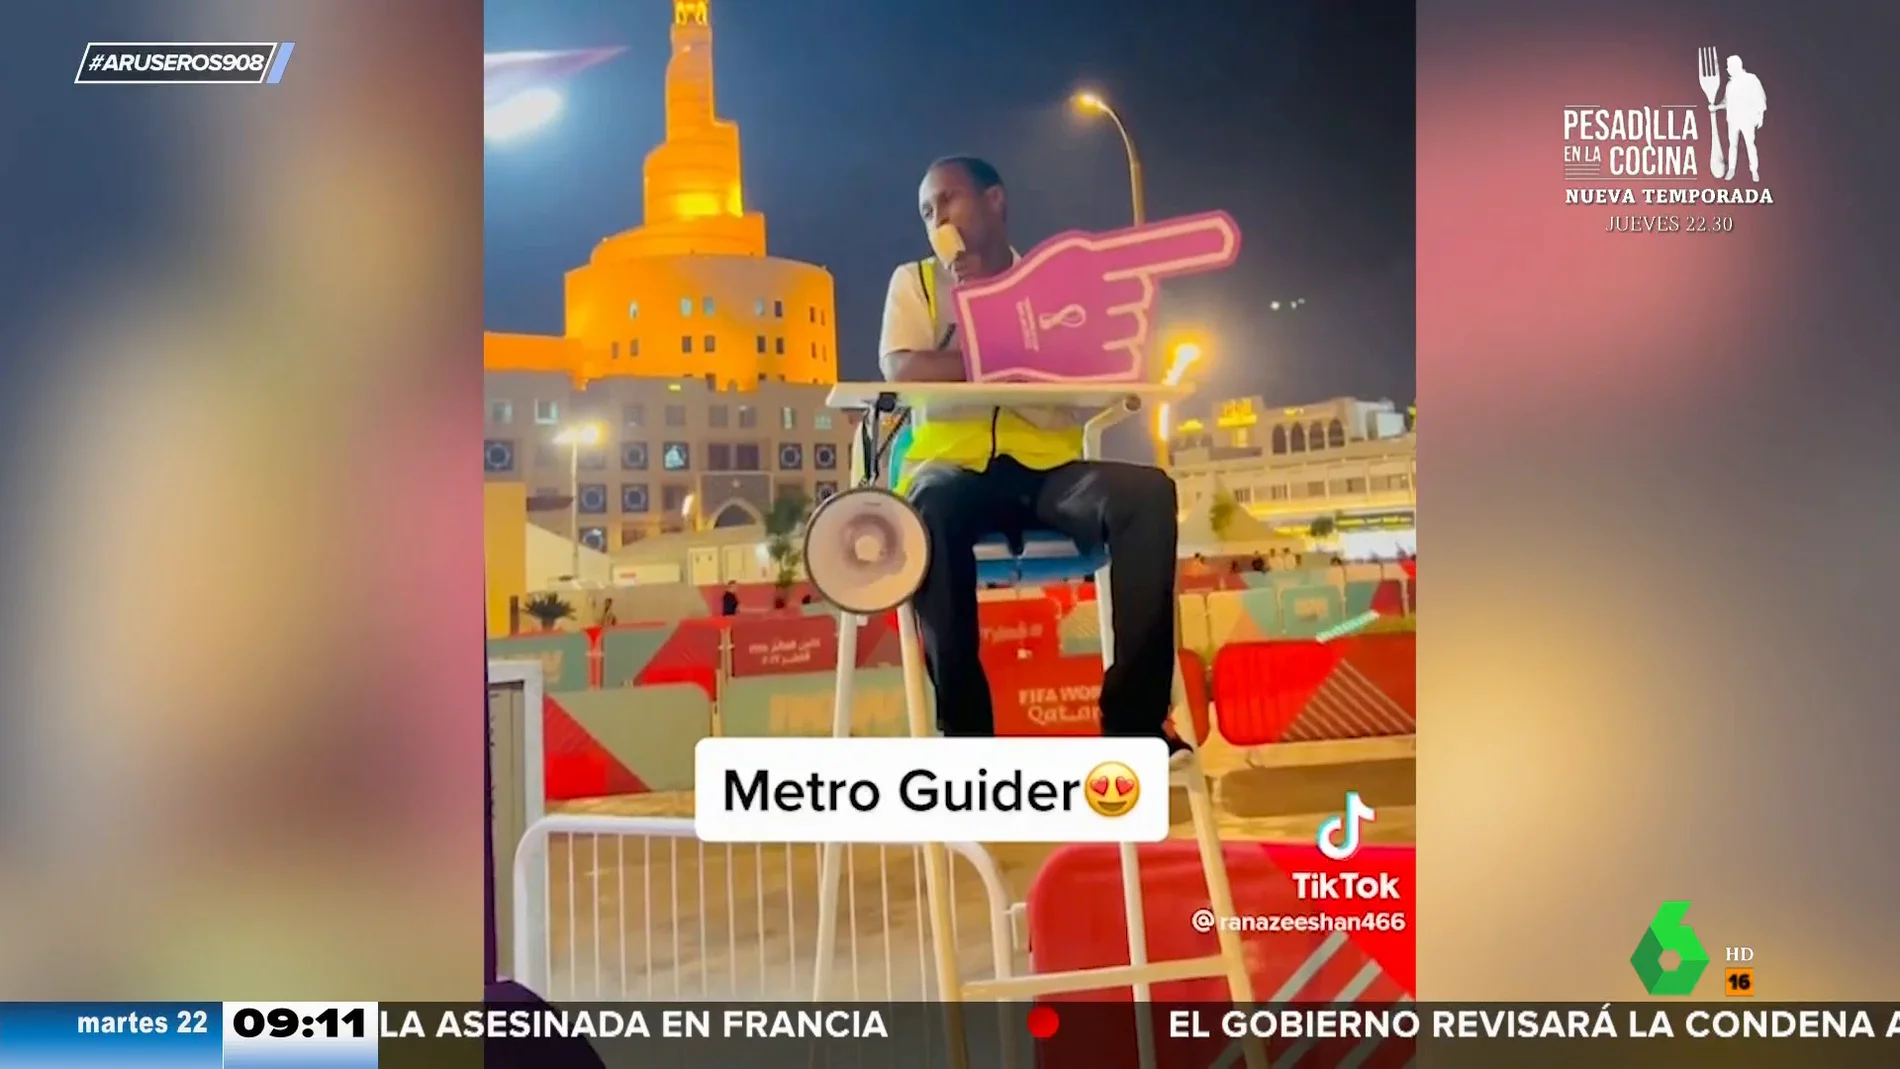 La pegadiza canción del operario que indica dónde está el metro en el Mundial de Qatar